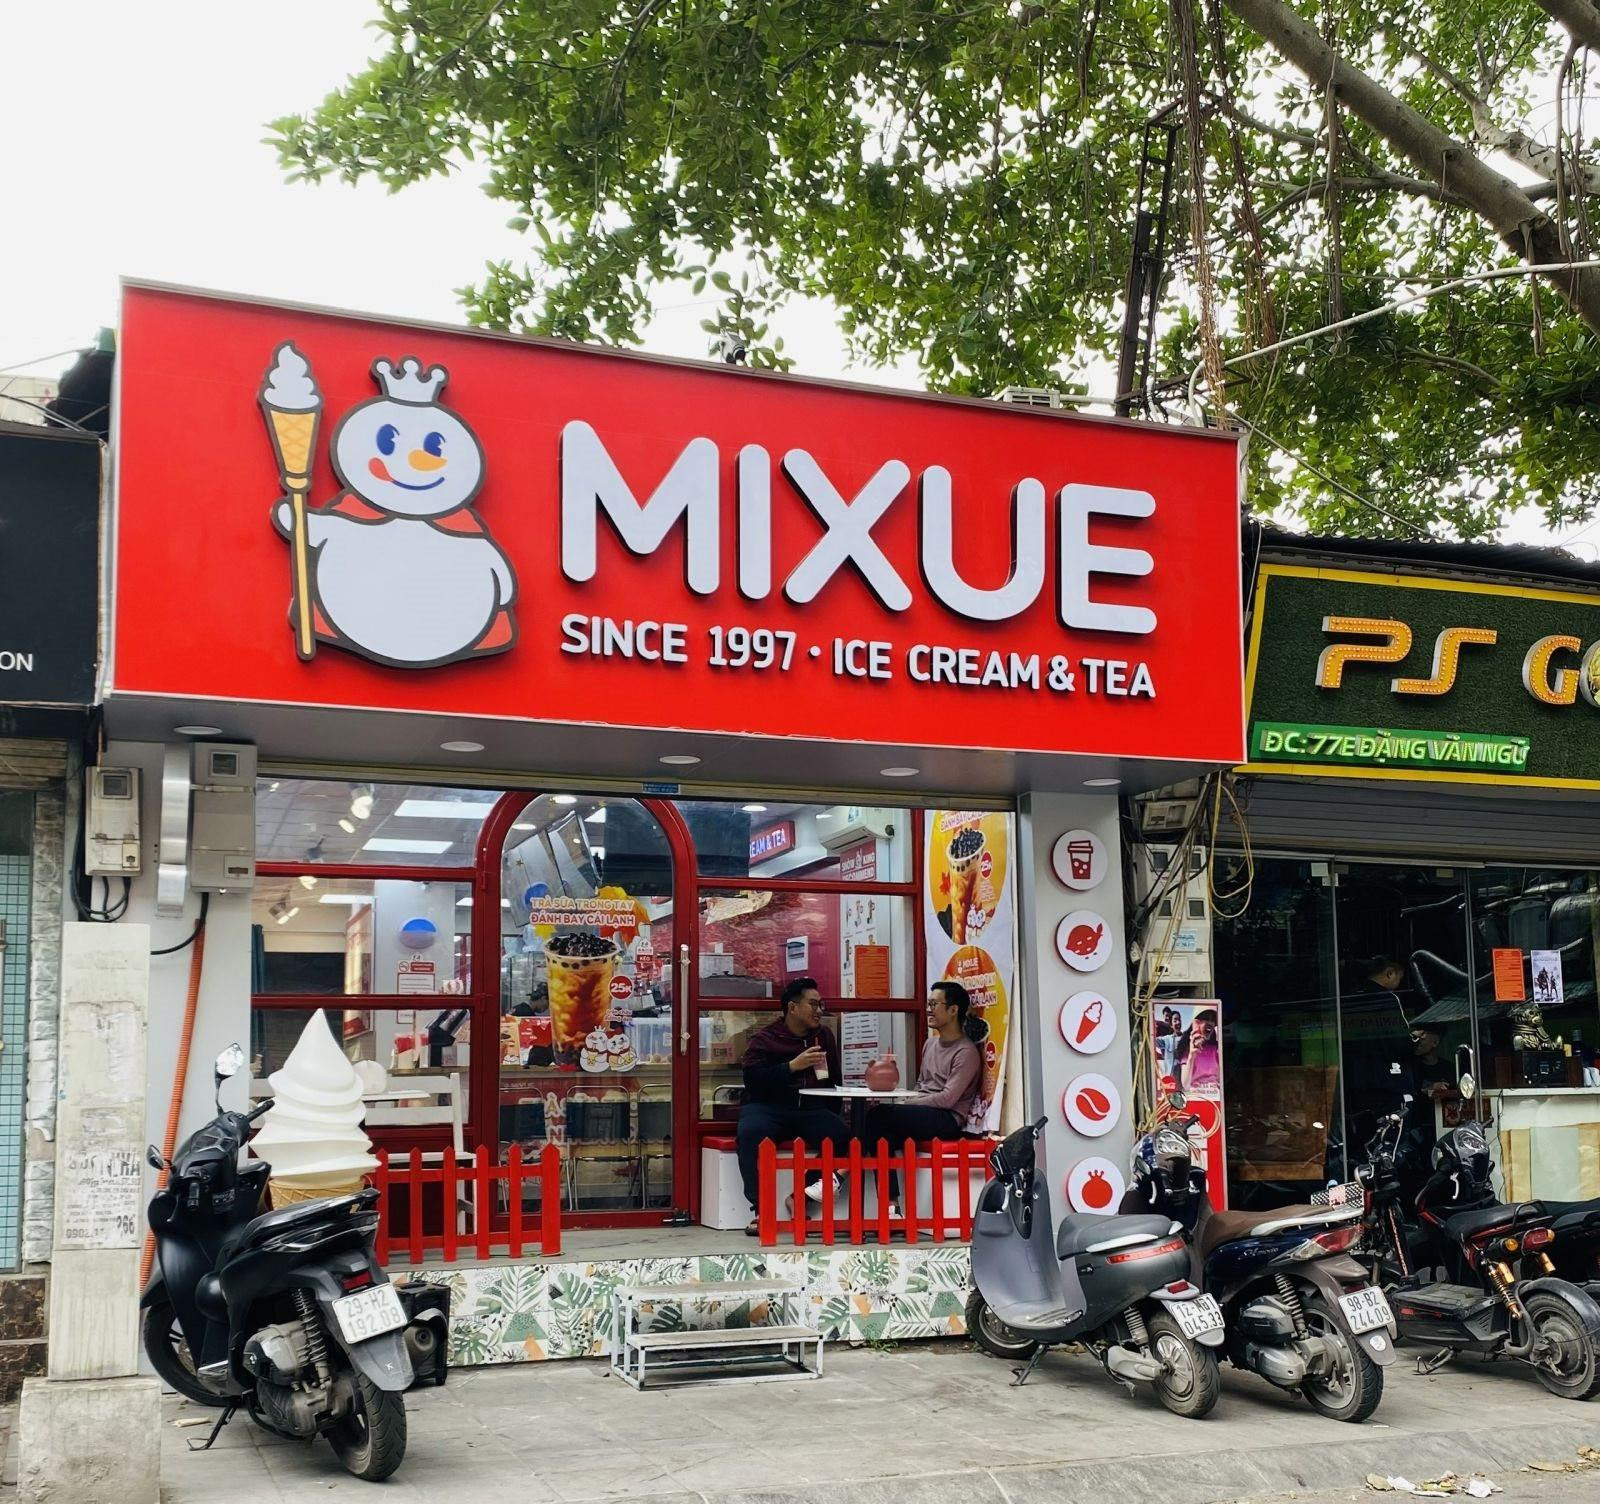 Đối thủ &quot;đồng hương&quot; của Mixue đã đến Việt Nam: Phong cách y hệt, bán trà sữa và kem &quot;đồng dạng&quot; Mixue nhưng giá rẻ hơn... 1.000 đồng - Ảnh 2.